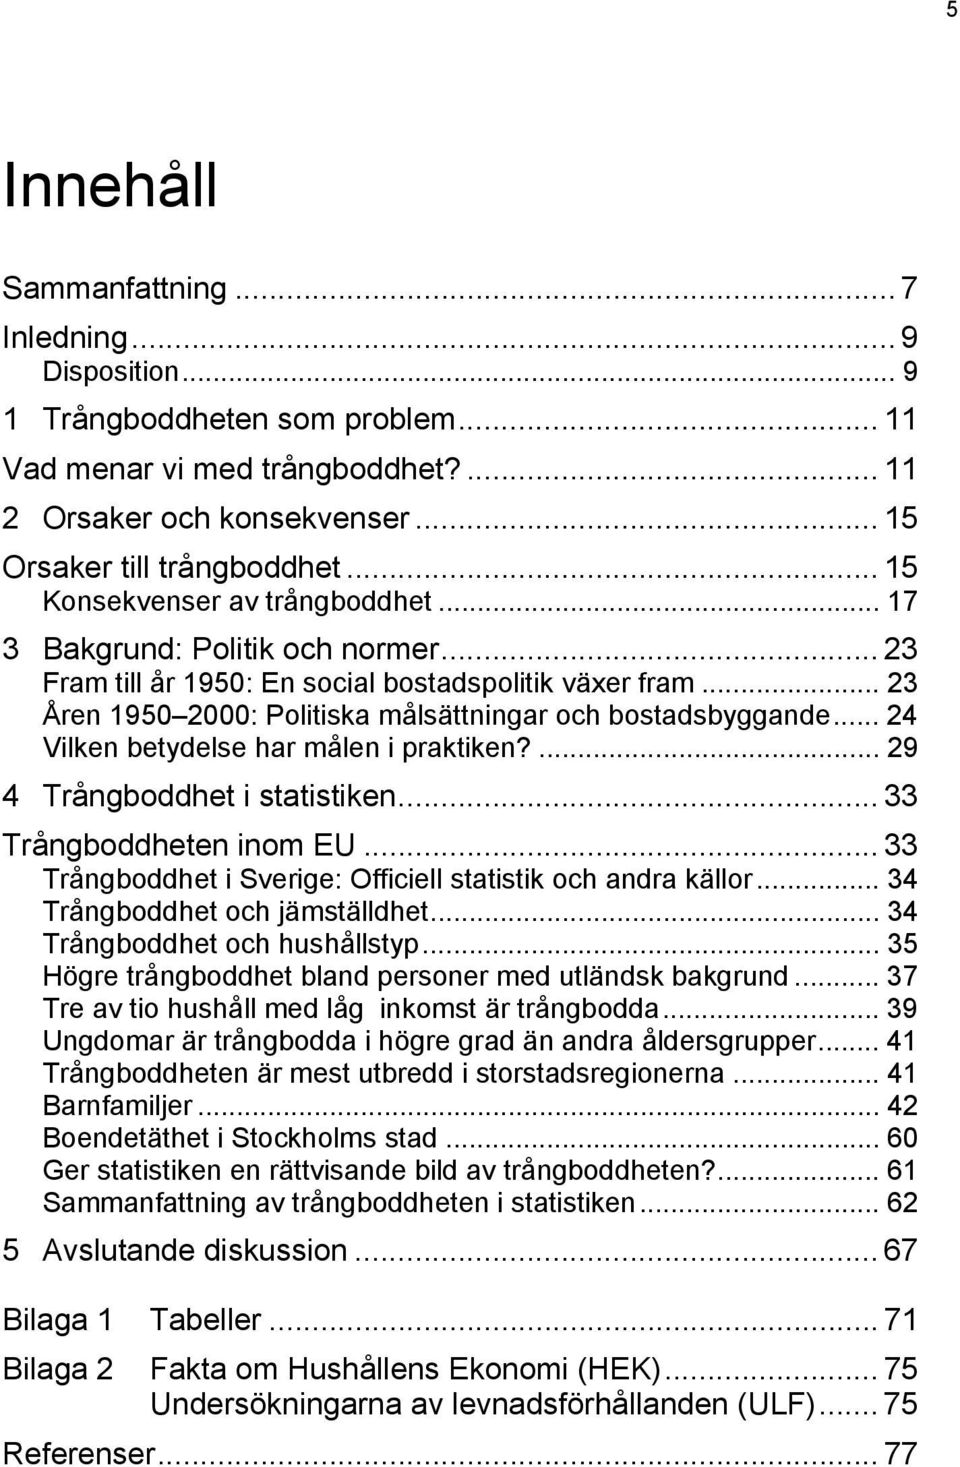 .. 24 Vilken betydelse har målen i praktiken?... 29 4 Trångboddhet i statistiken... 33 Trångboddheten inom EU... 33 Trångboddhet i Sverige: Officiell statistik och andra källor.